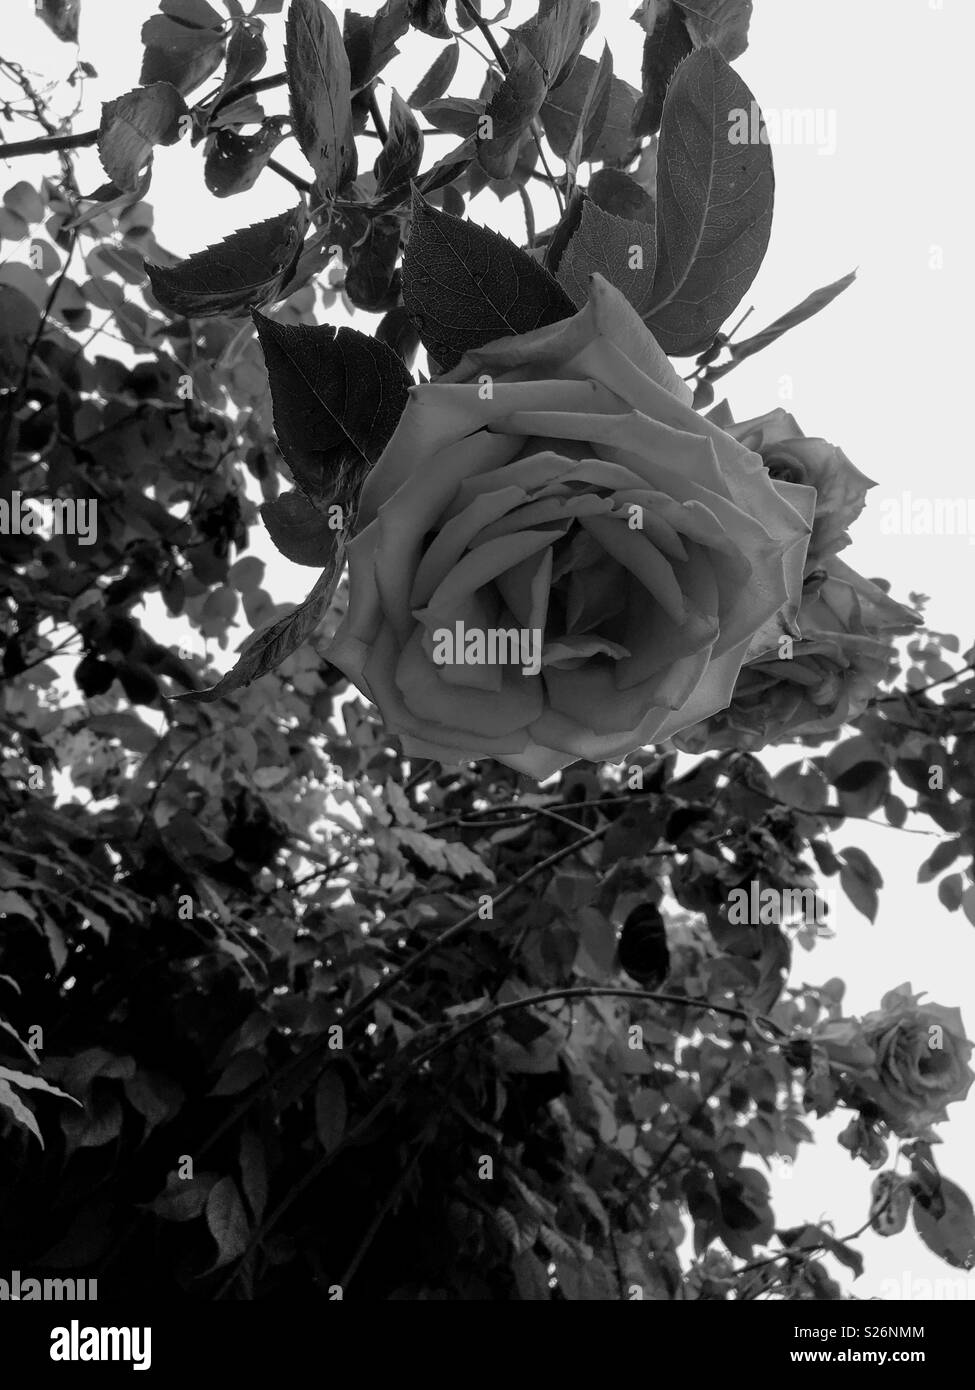 Rose Bush in Black & White Stock Photo